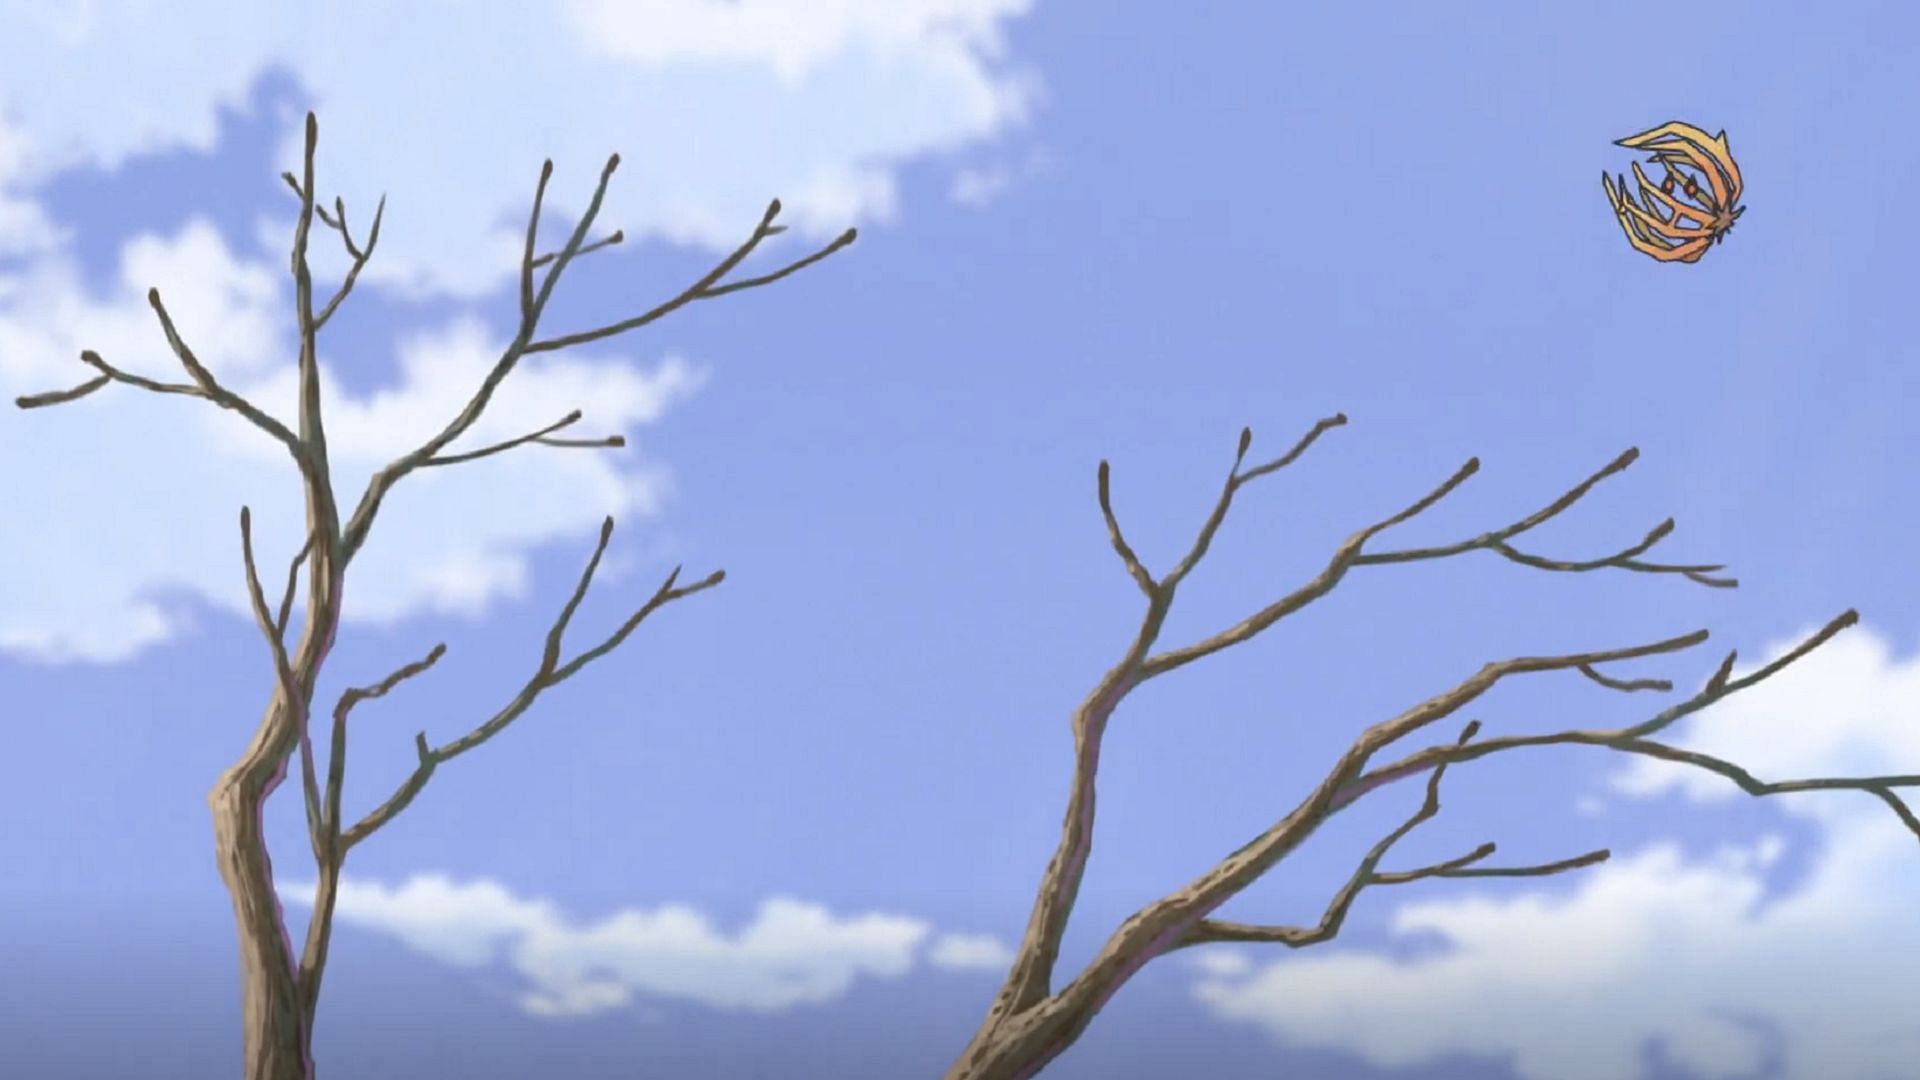 Bramblin continua a lasciarsi trasportare dal vento in Pokemon Horizons Episodio 35 (Immagine tramite The Pokemon Company)